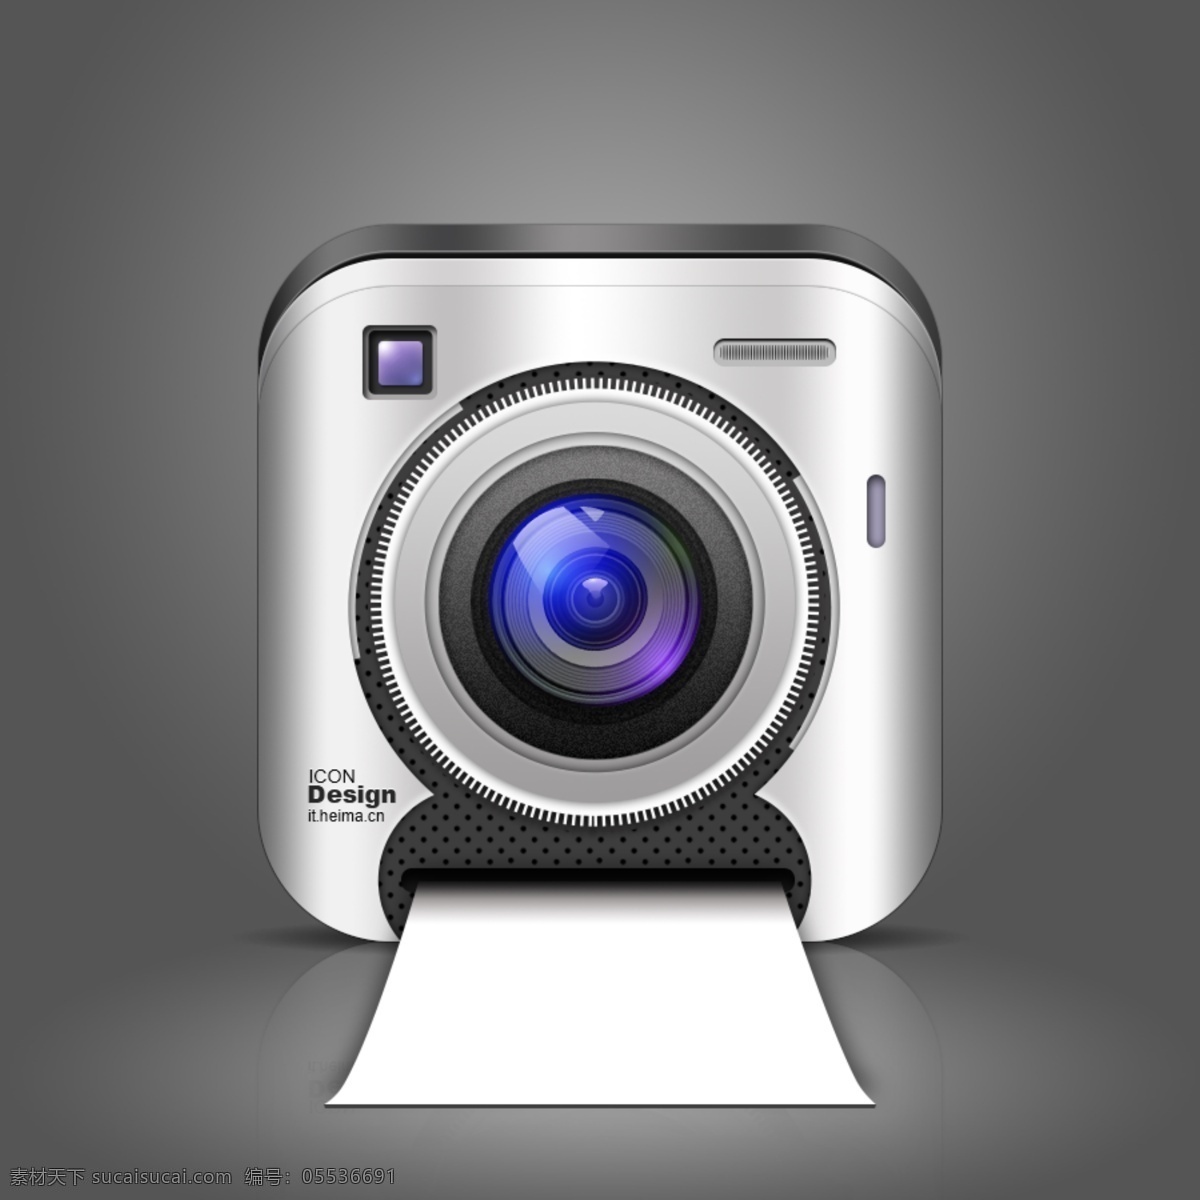 拟物写实相机 拟物 写实 相机 蓝光 ui 图标